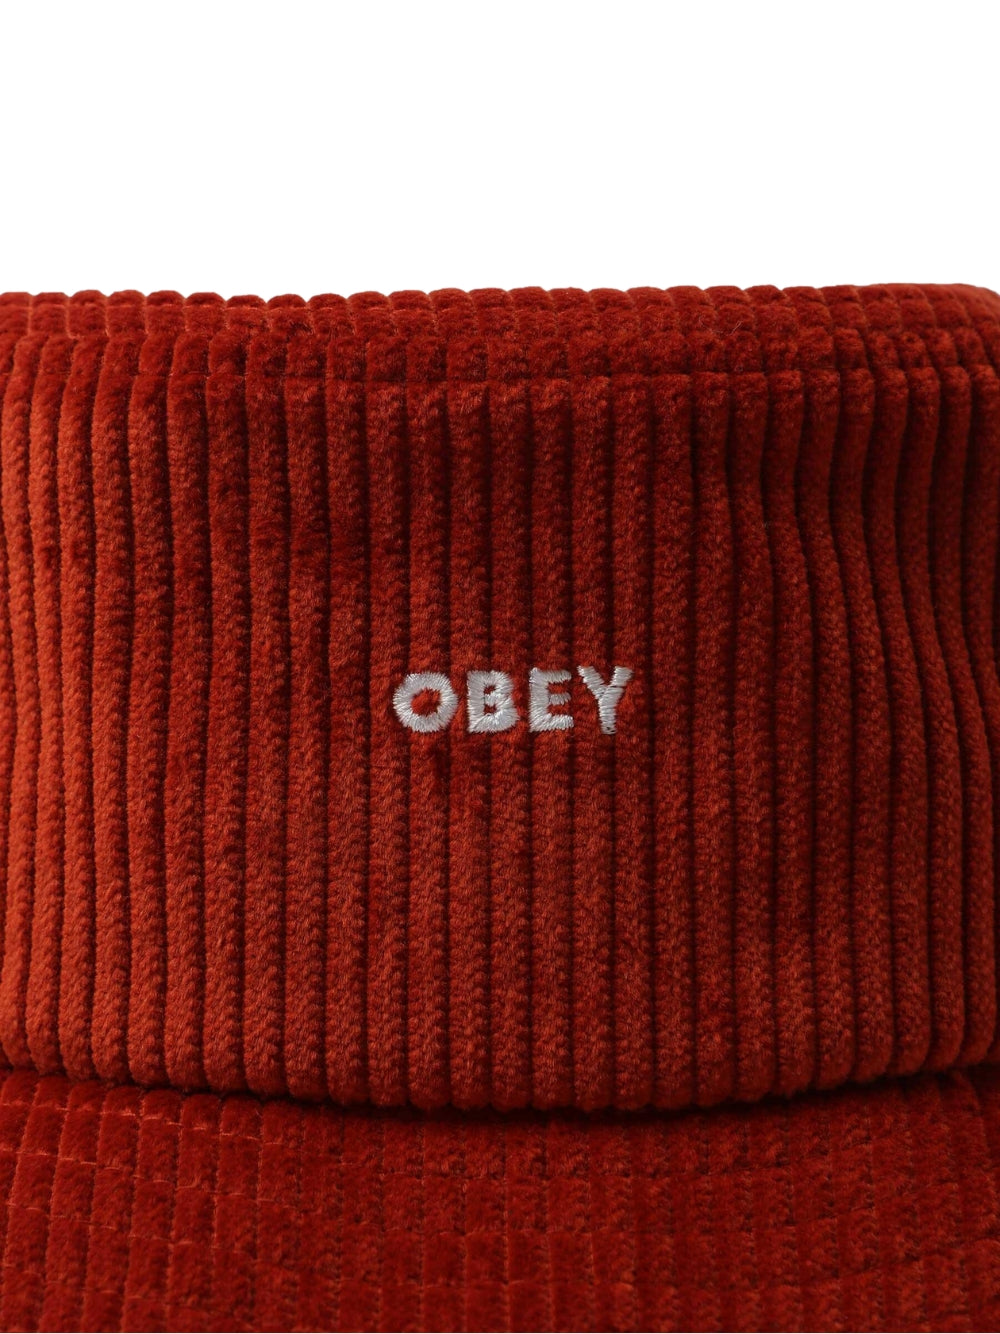 Obey hat